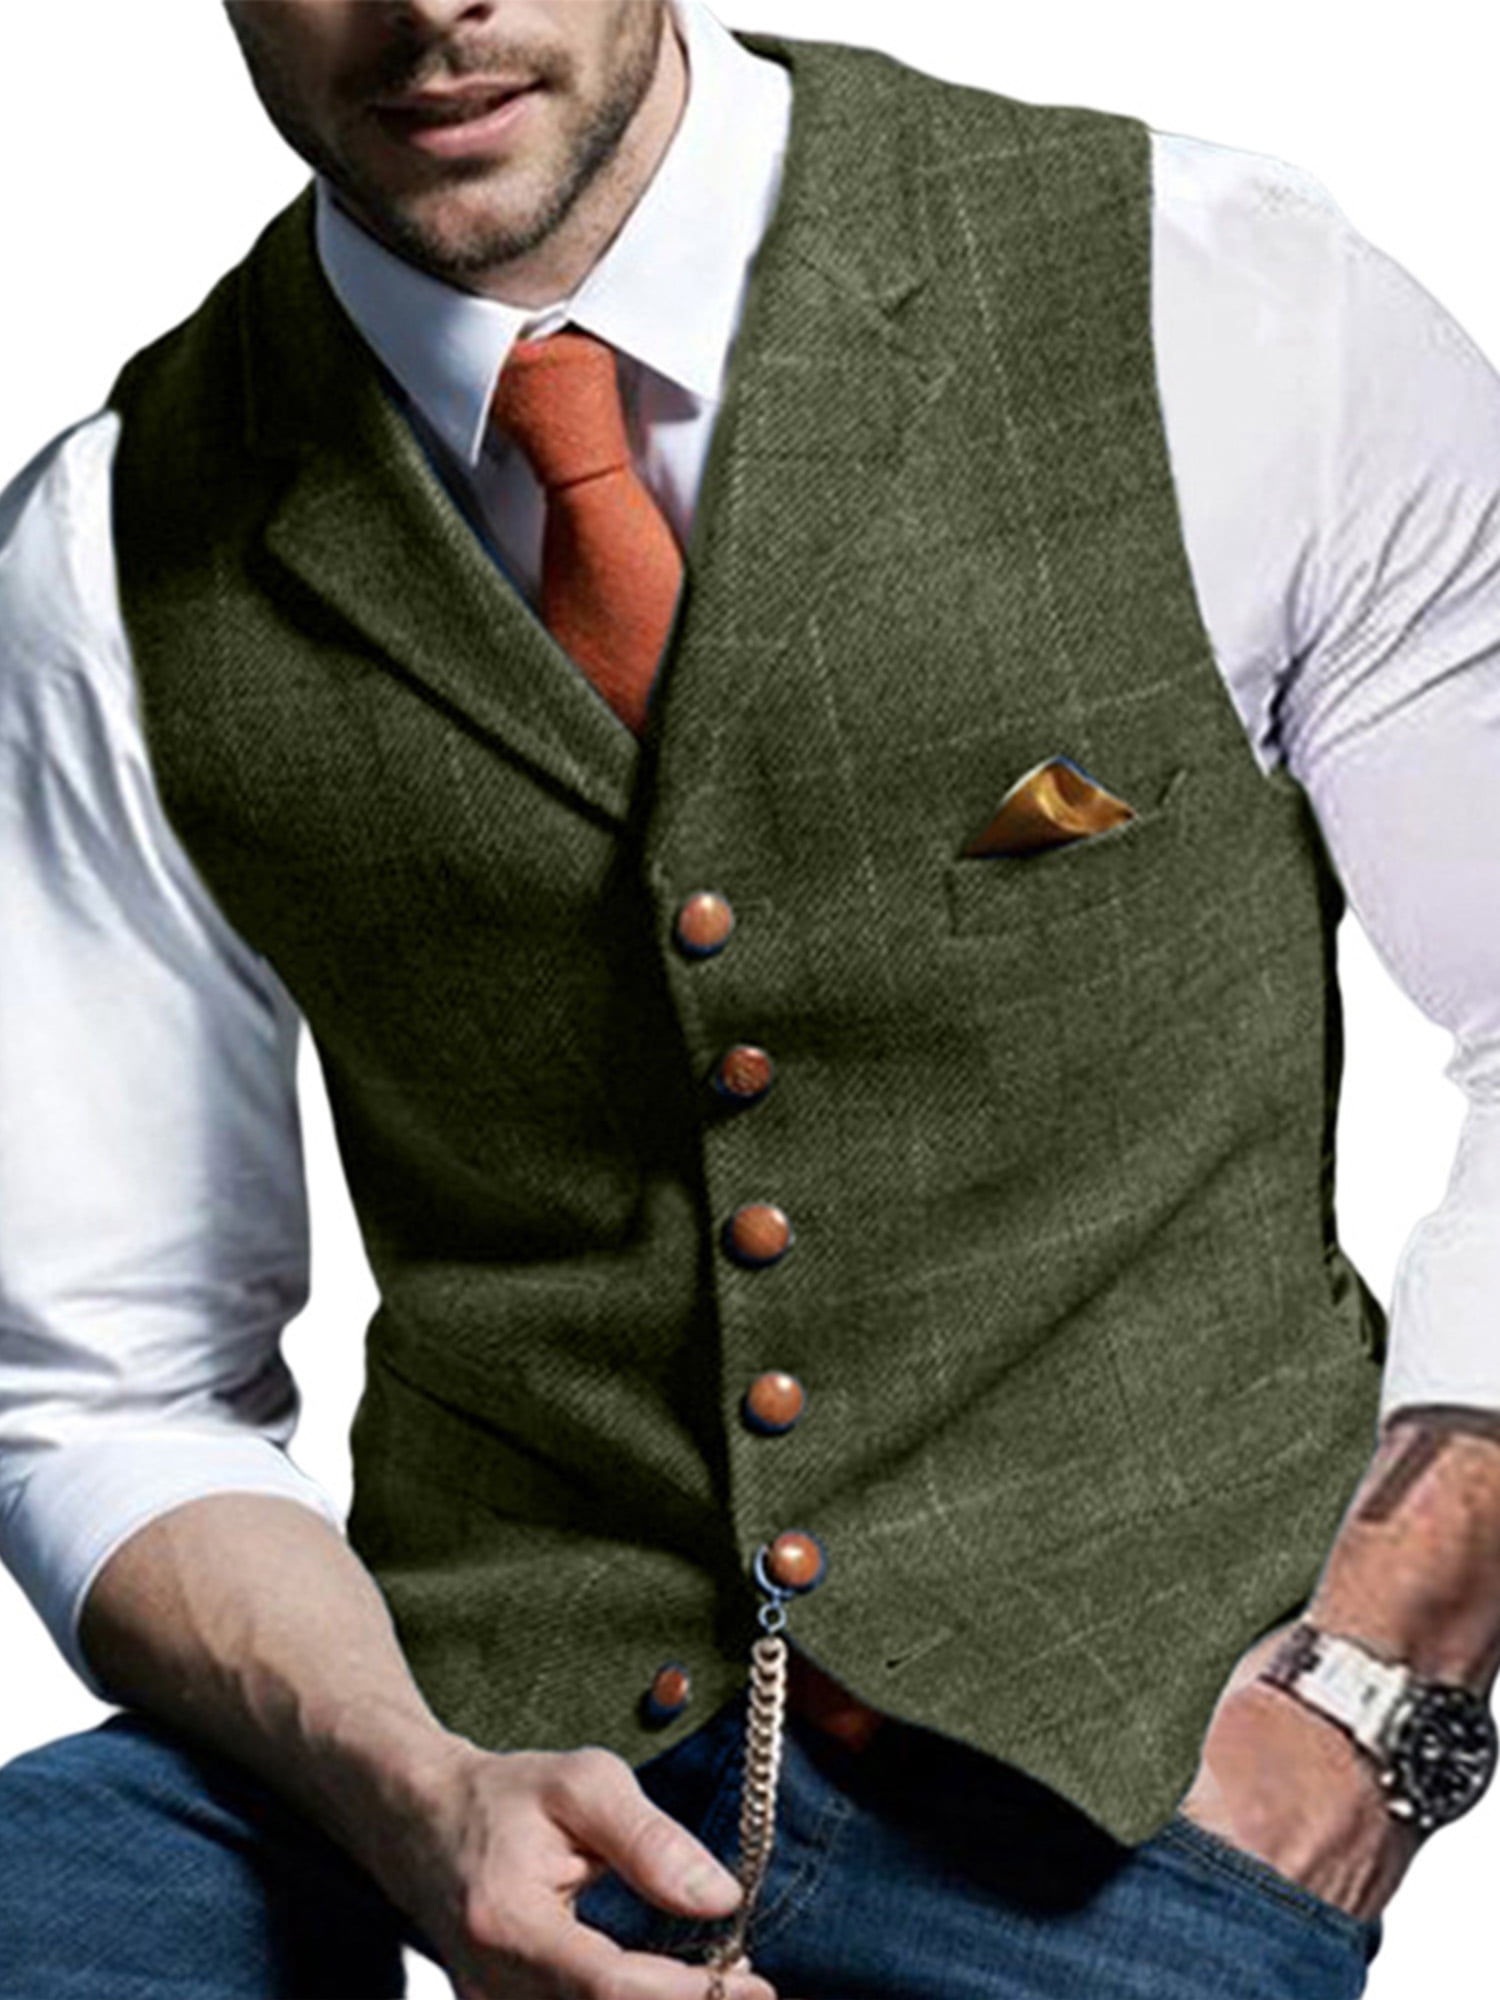 Men Formal Suit Vest Business Vest for Suit or Tuxedo Herringbone Tweed ...